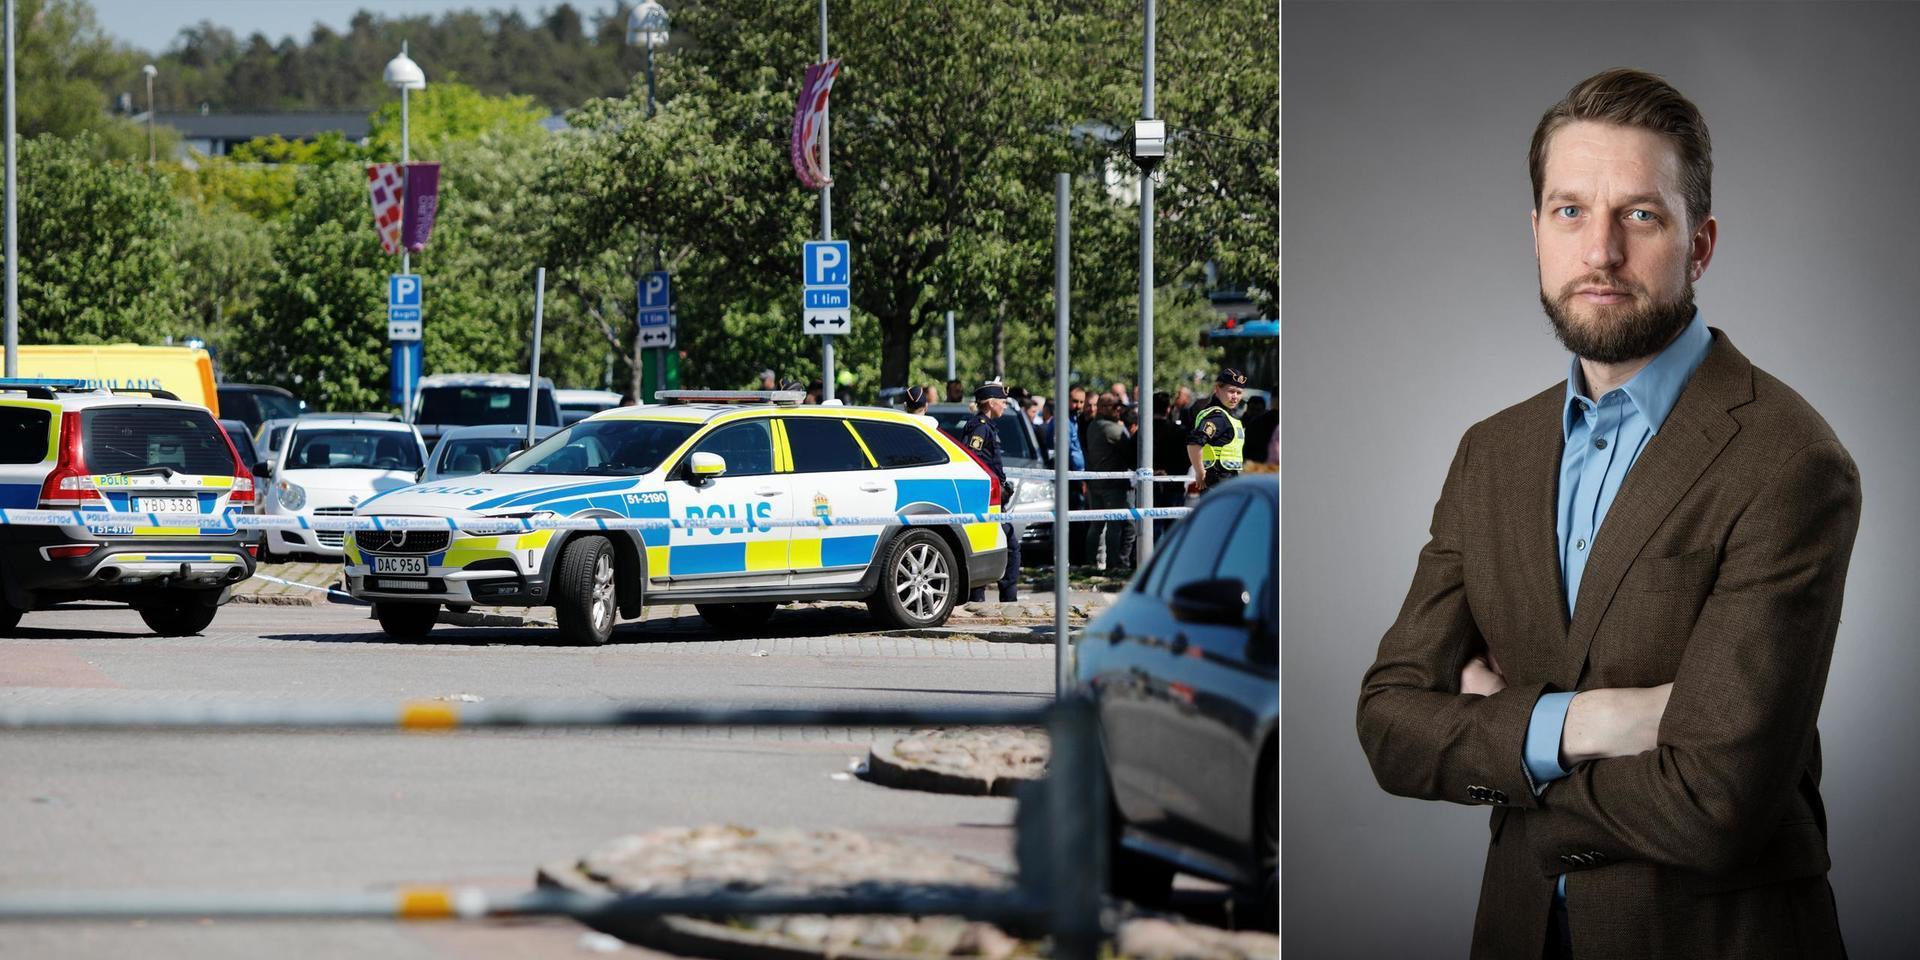 Under helgens kaos i Hjällbo hindrades vårt team av aggressiva personer. Det inträffade är naturligtvis helt oacceptabelt, skriver GP:s chefredaktör Christofer Ahlqvist.